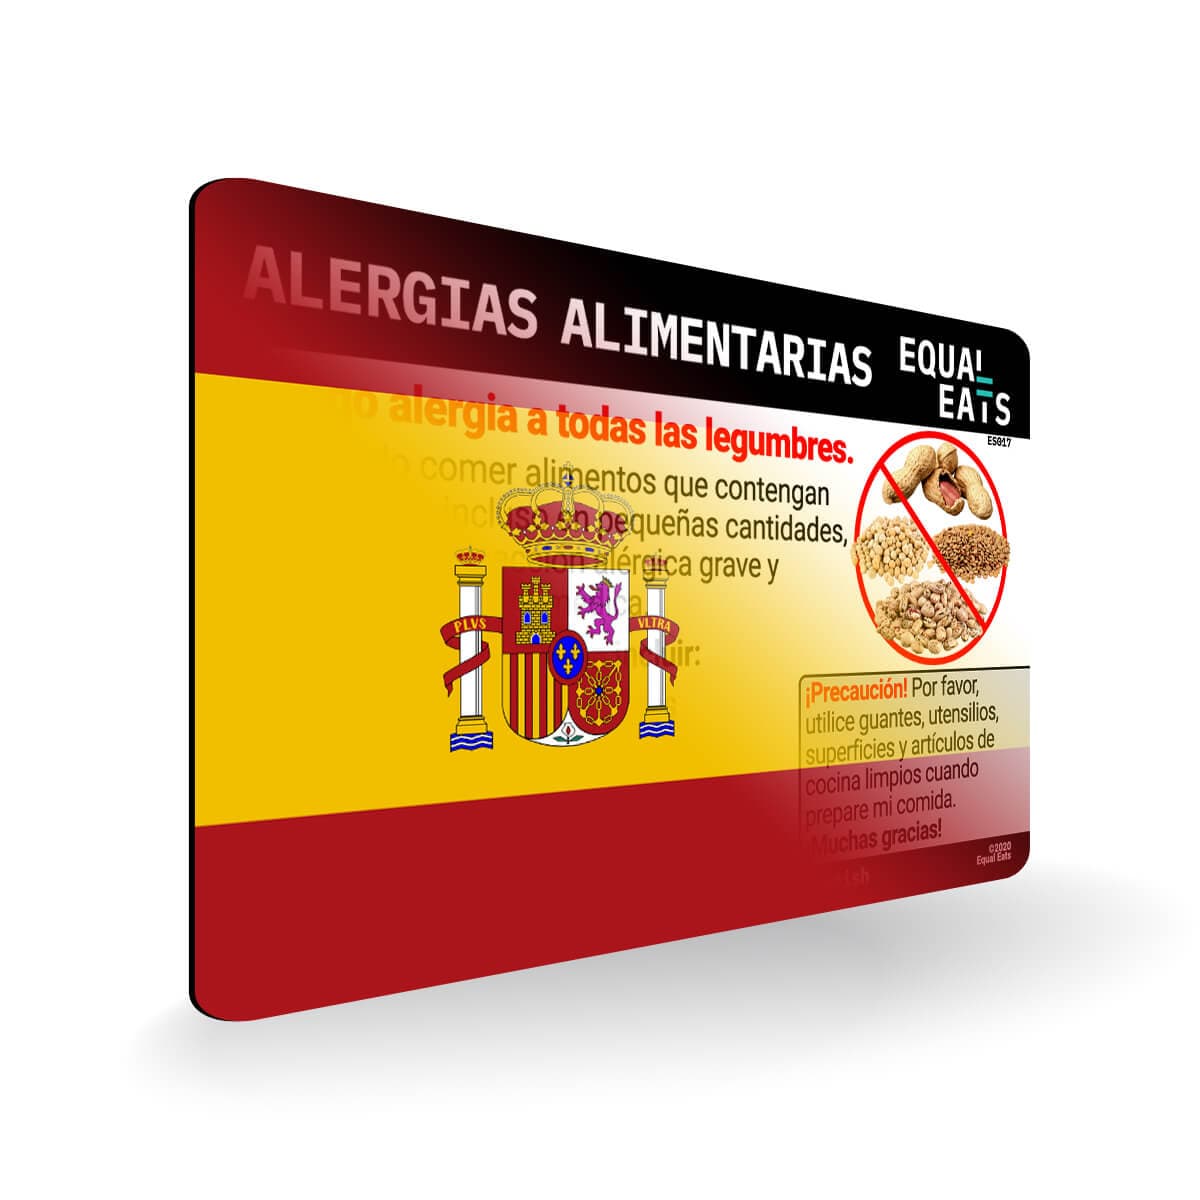 Legume Allergy in Spanish. Legume Allergy Card for Spain